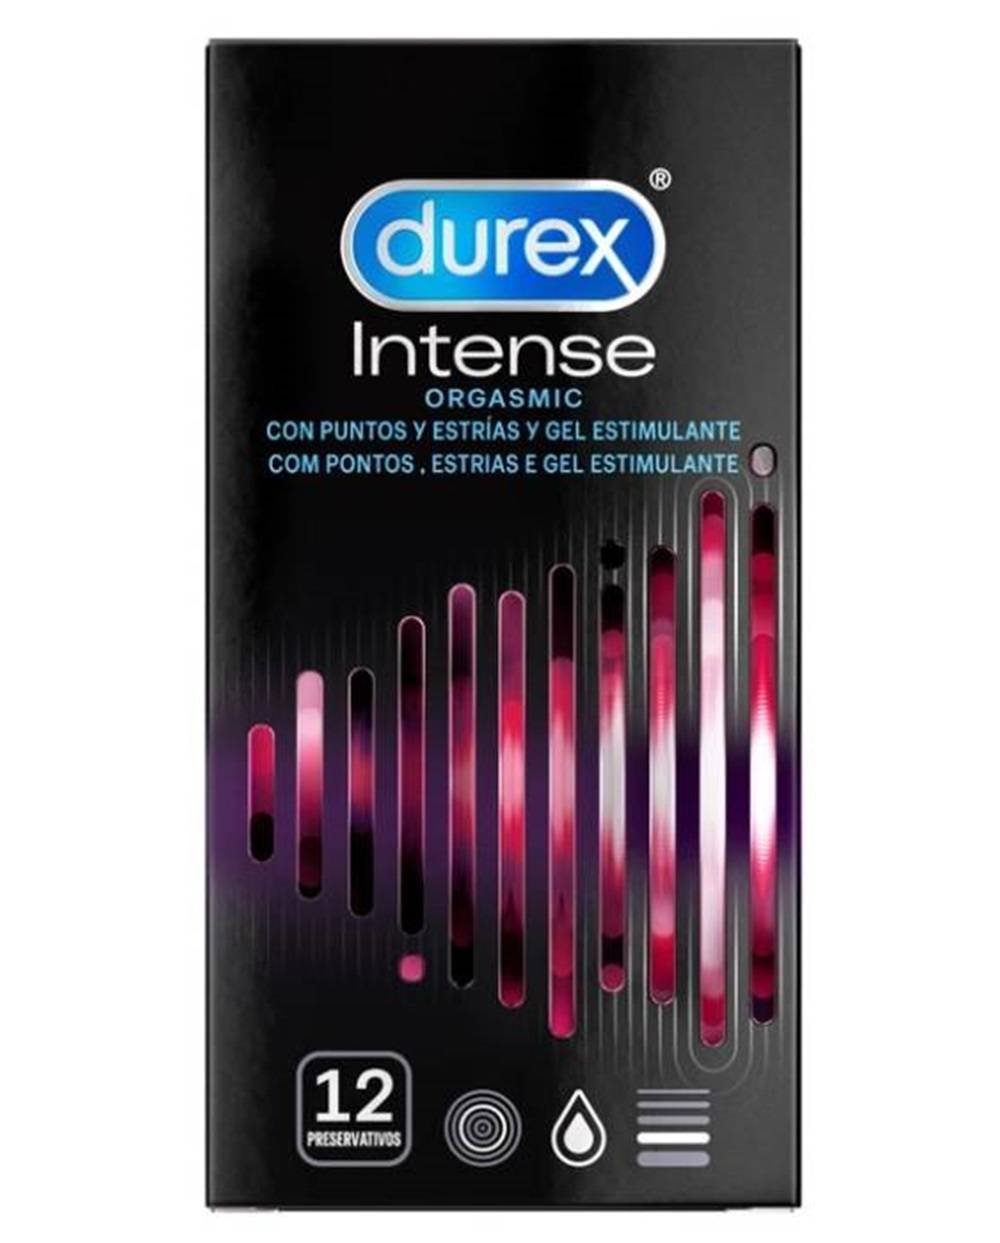 Durex Intense Orgasmic 12 u. n